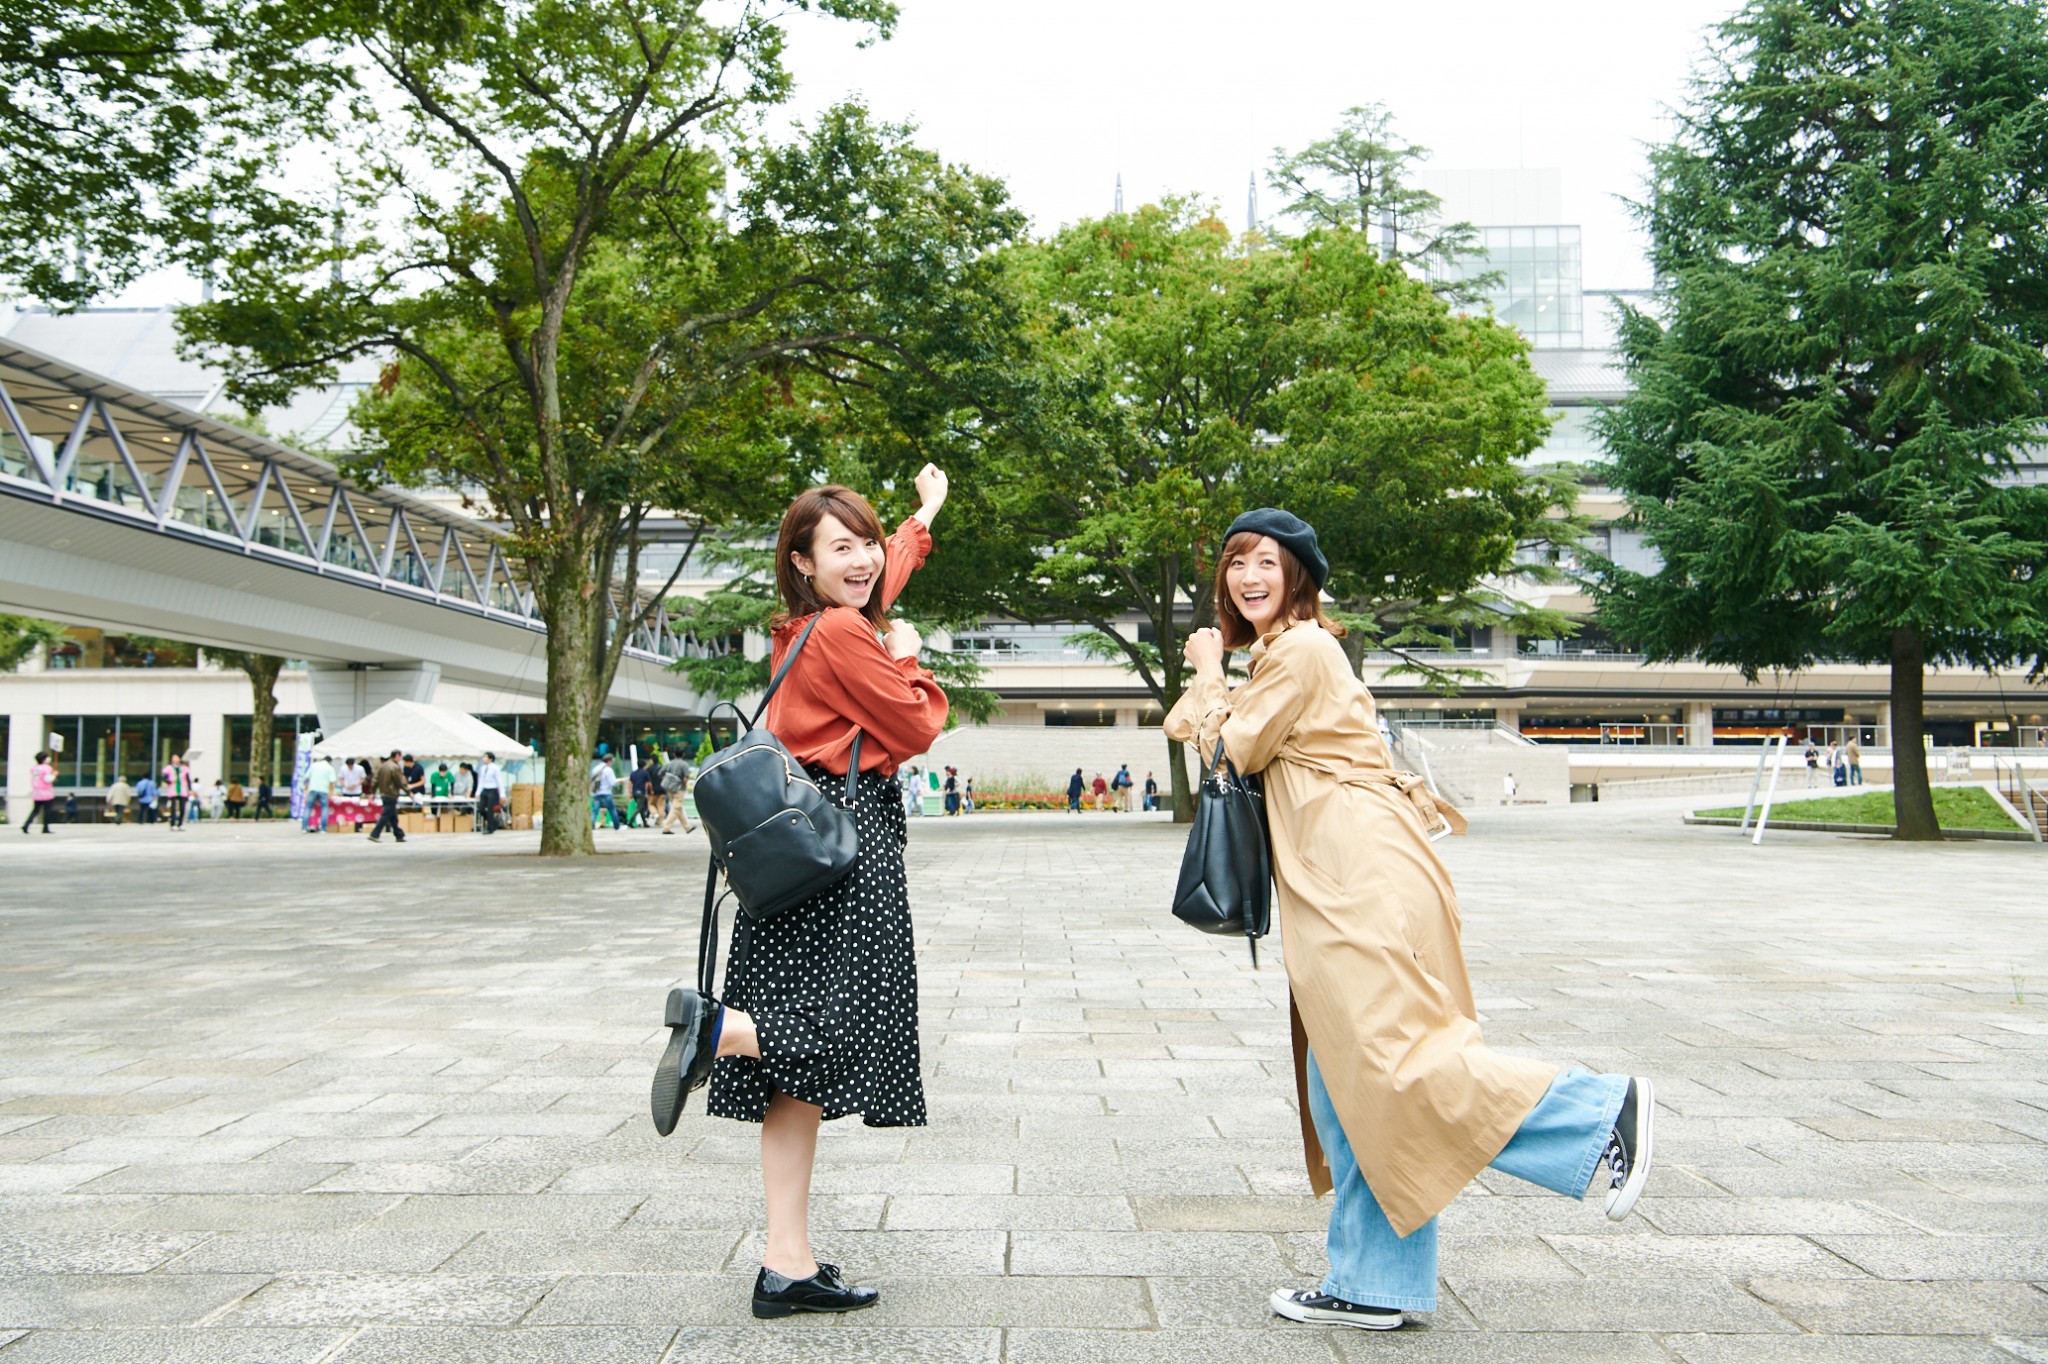 右：小松彩夏さん。女優、グラビアタレントとしてテレビや雑誌等で活躍。左：小林真琴さん。美容関連会社勤務、趣味は音楽鑑賞、スポーツ、食べ歩き。